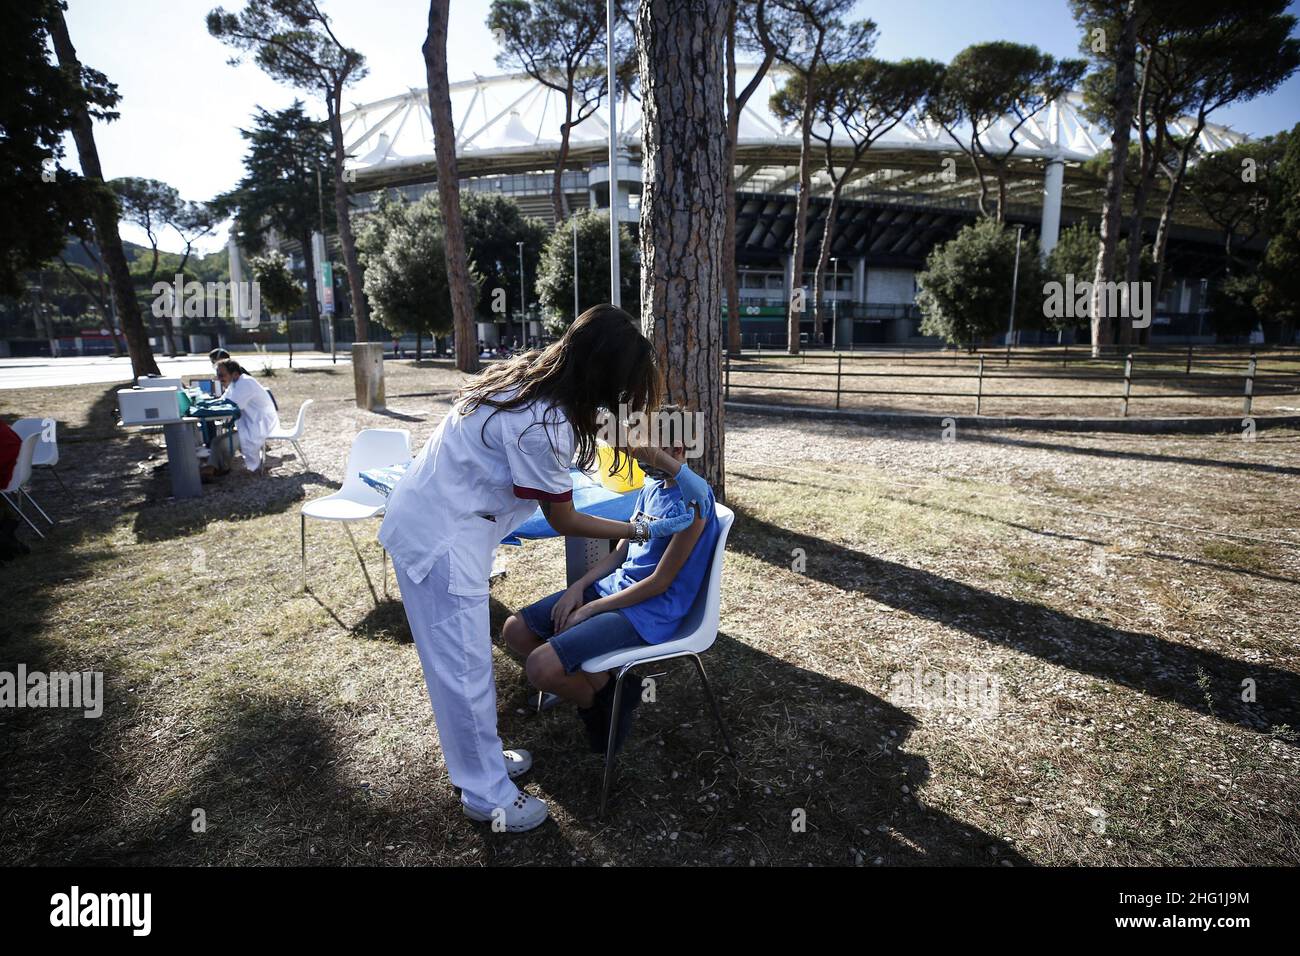 Cecilia Fabiano/ LaPresse 22 de septiembre de 2021 Roma (Italia) Noticias : Vacunación Covid frente al estadio Olimpico para los aficionados romaníes en el Pic : el sitio de vacunación Foto de stock